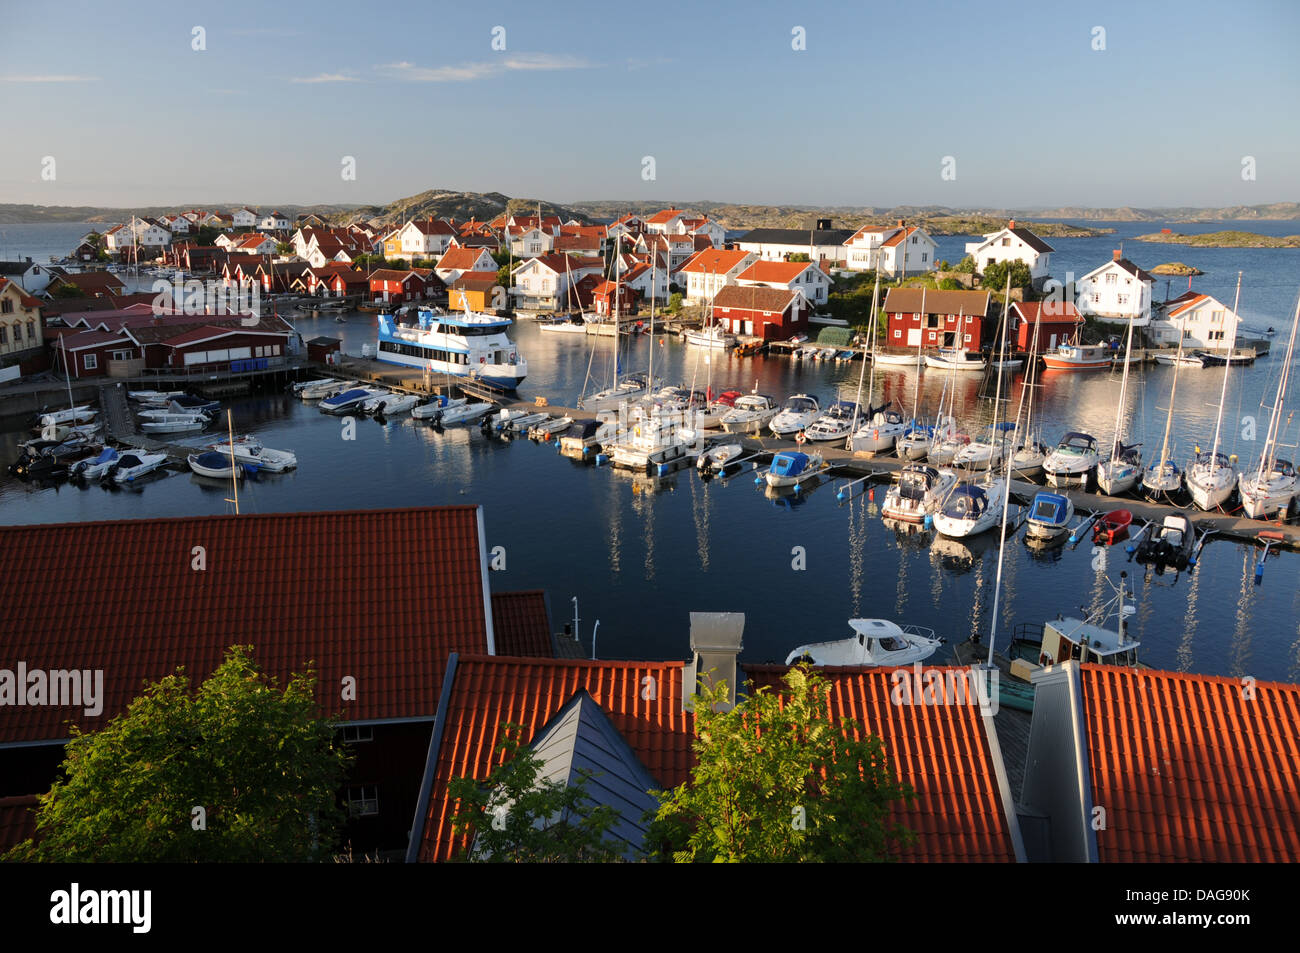 Kleiner Hafen mit Booten, Yachten und bunte Häuser auf der Insel von Gullholmen in Bohuslän an der Westküste von Schweden gefüllt Stockfoto